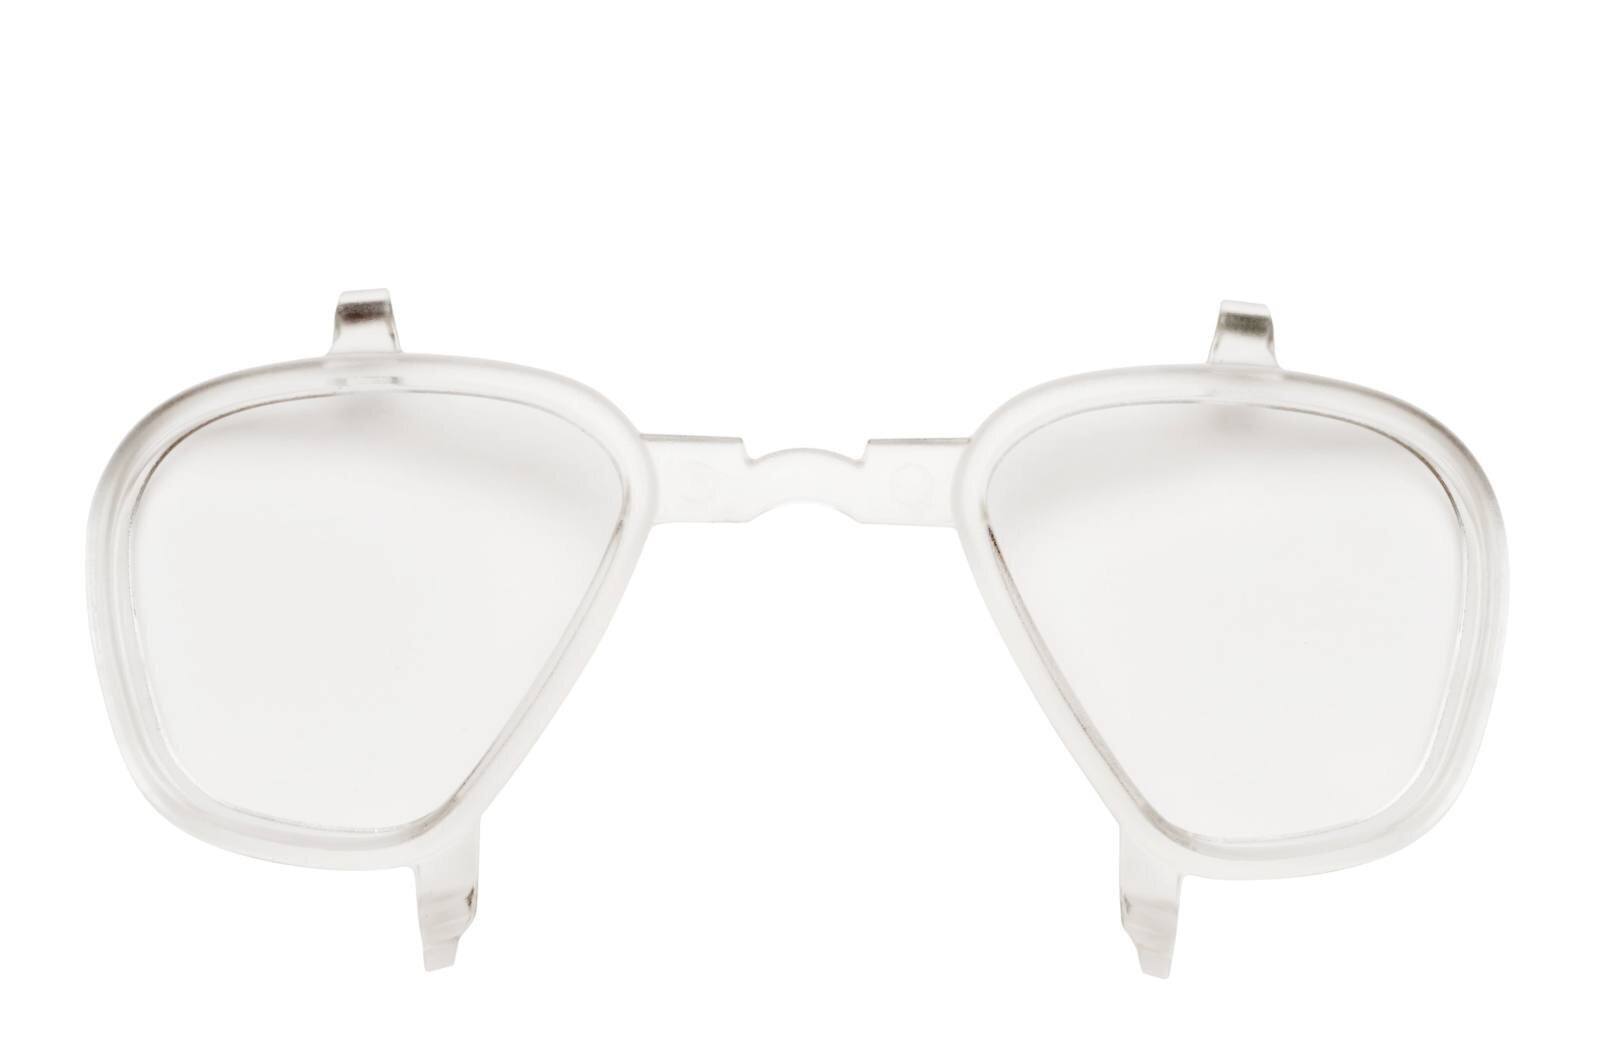 3M Inzetstuk met voorschrift voor GoggleGear 500, Scotchgard Anti-Fog, UV, bril met volledig zicht GG500KI / GG500PI-EU